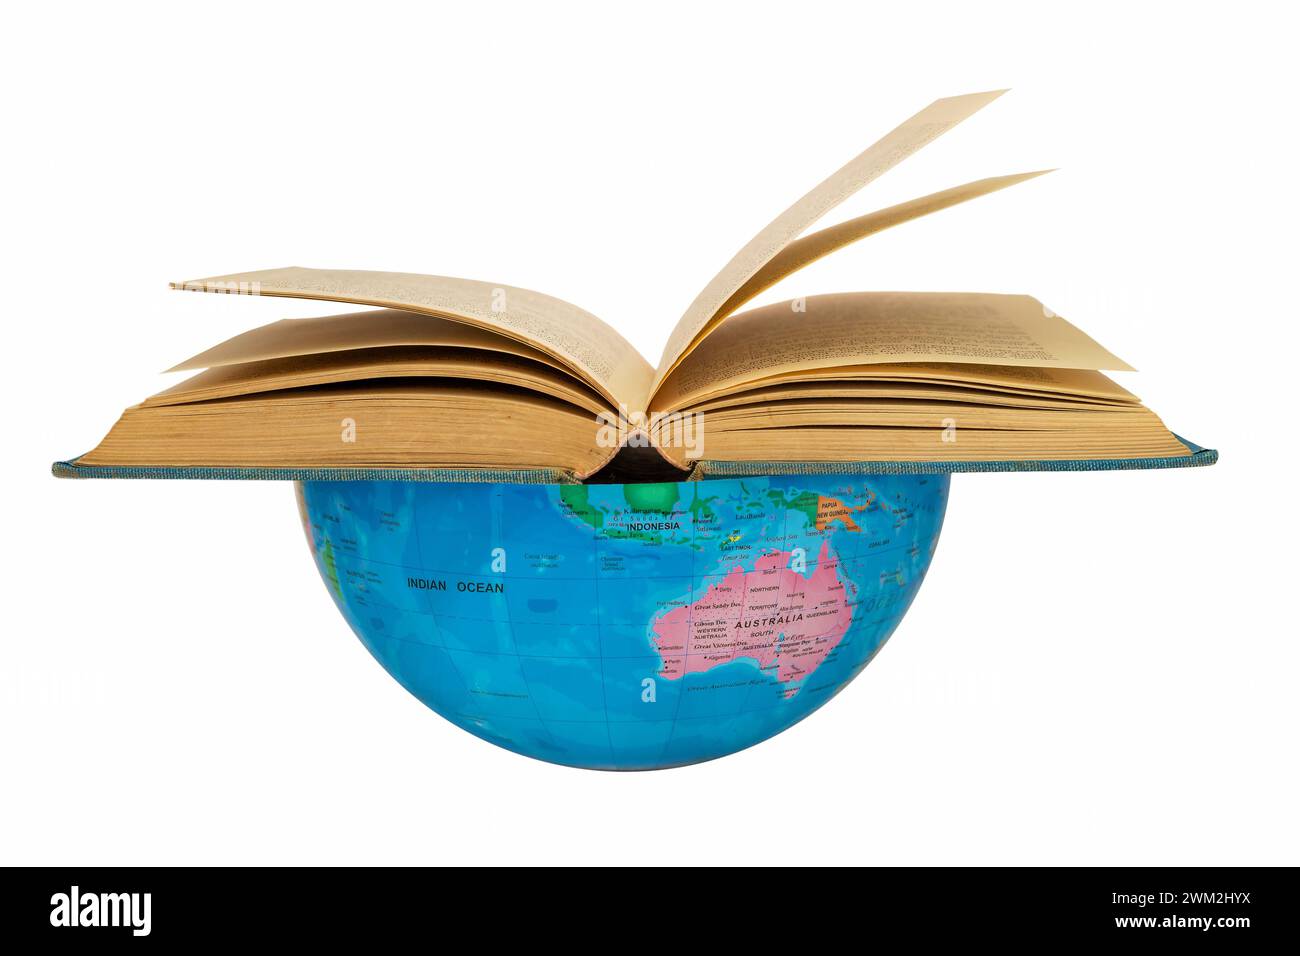 Hemisferio sur del globo con un libro abierto donde Australia: Concepto de librería. El hemisferio sur de la tierra apoya la lectura global de libros Foto de stock